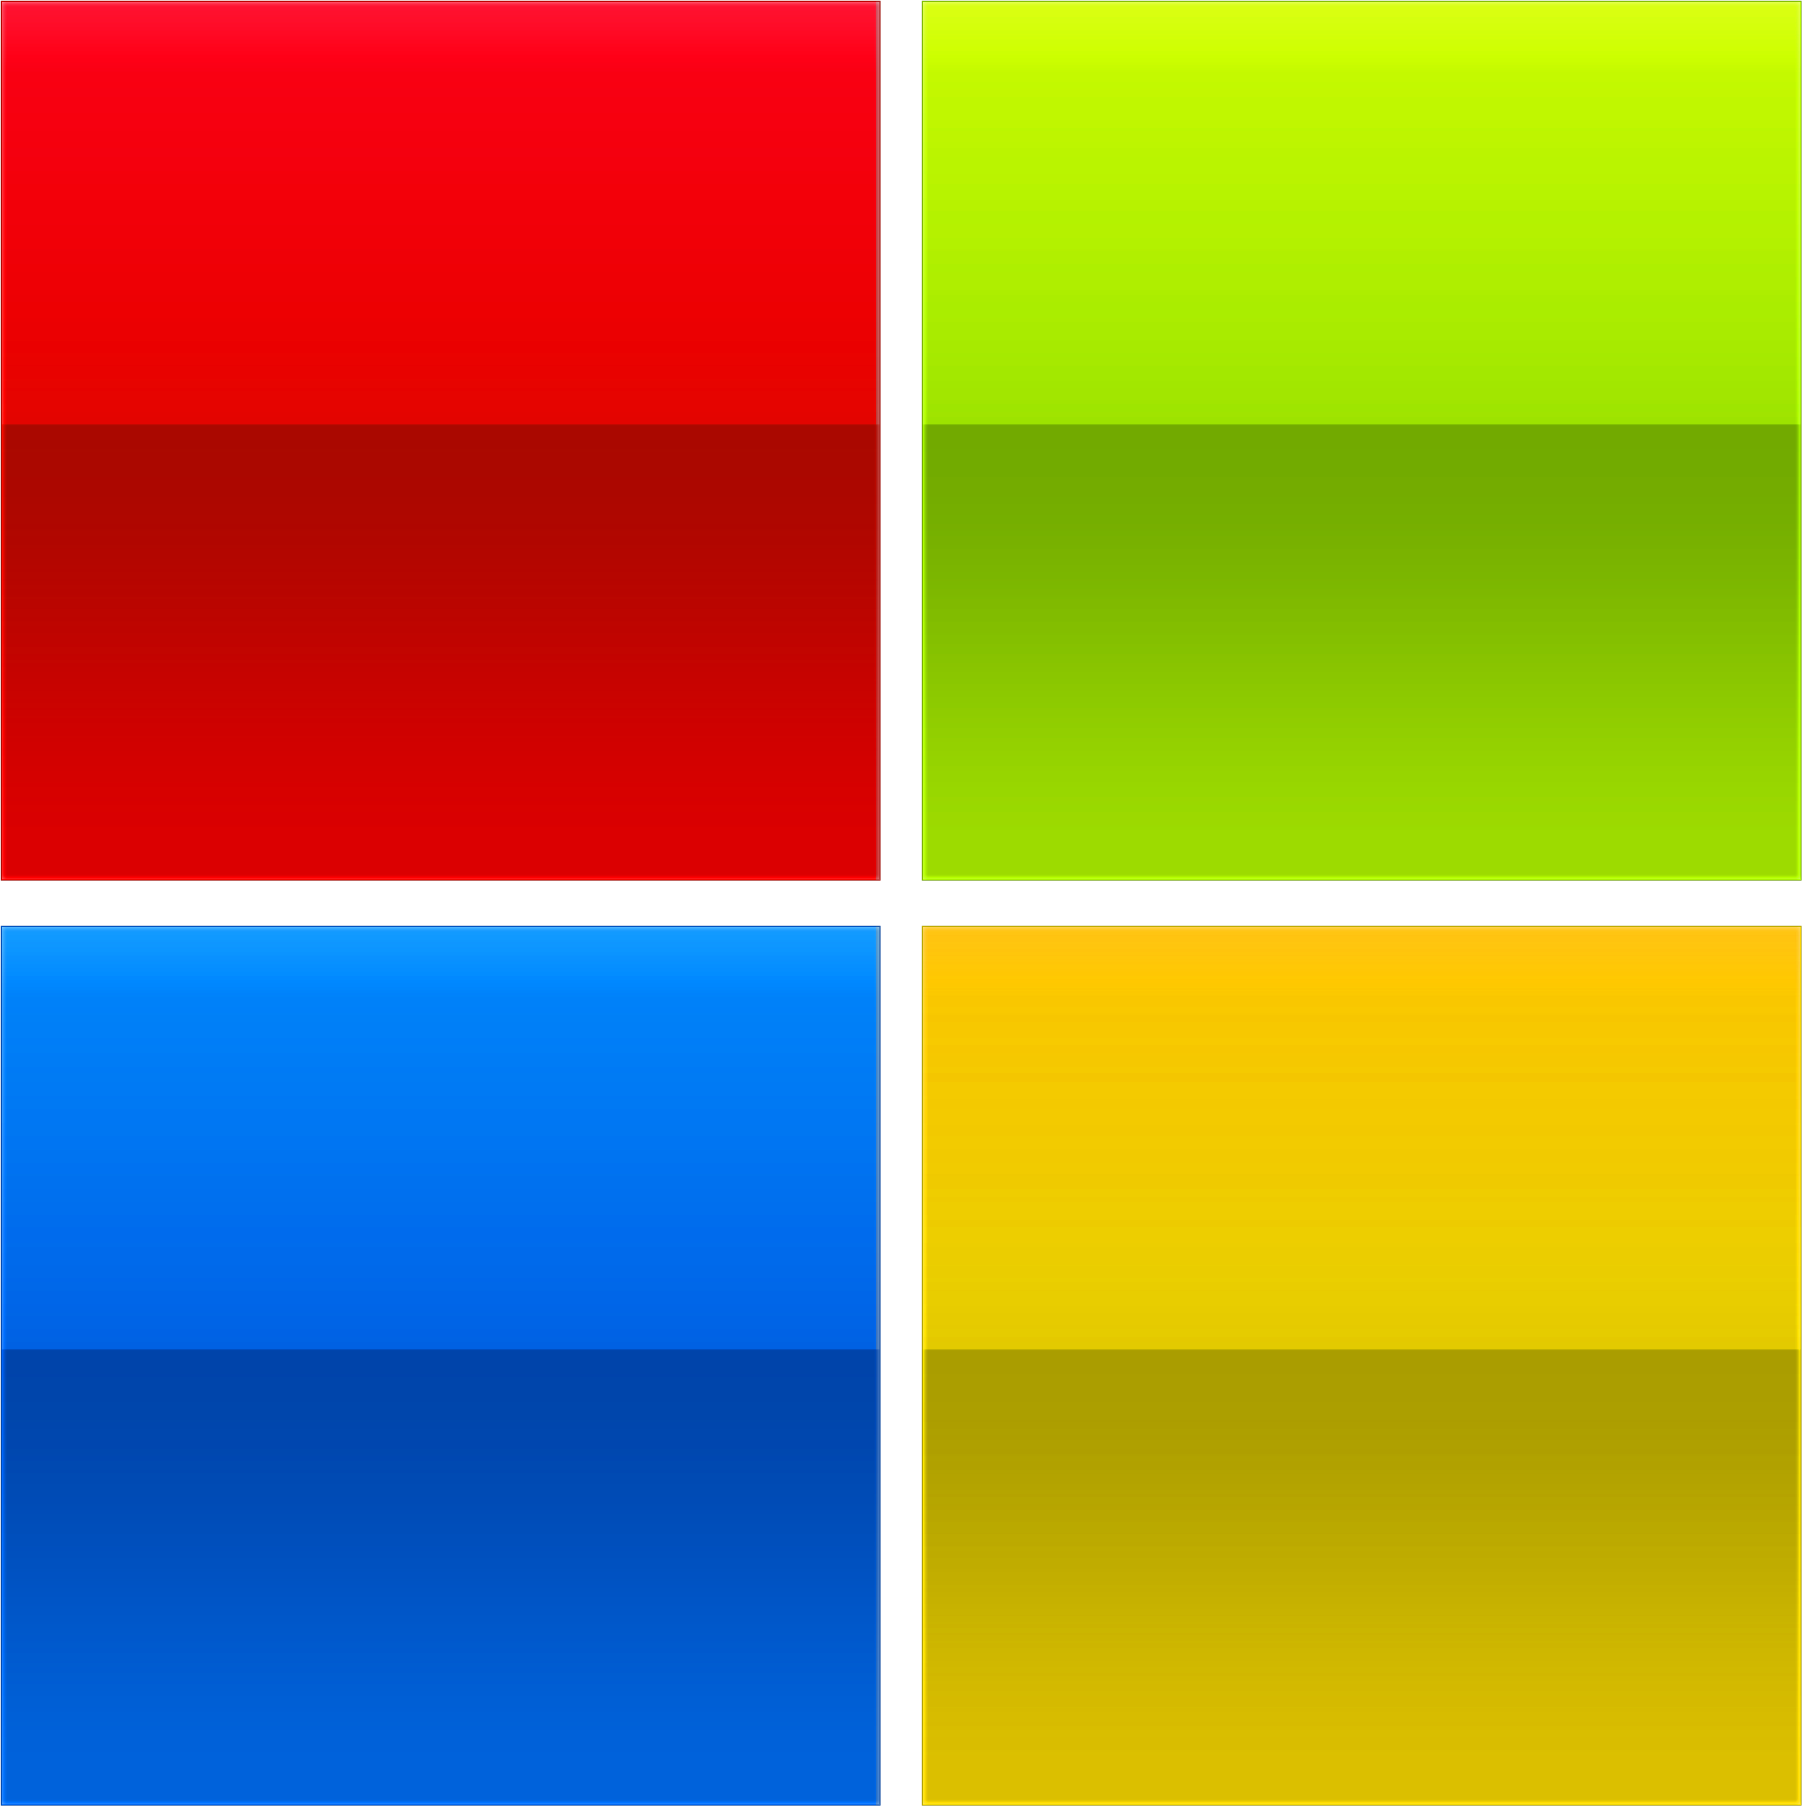 windows logo PNG